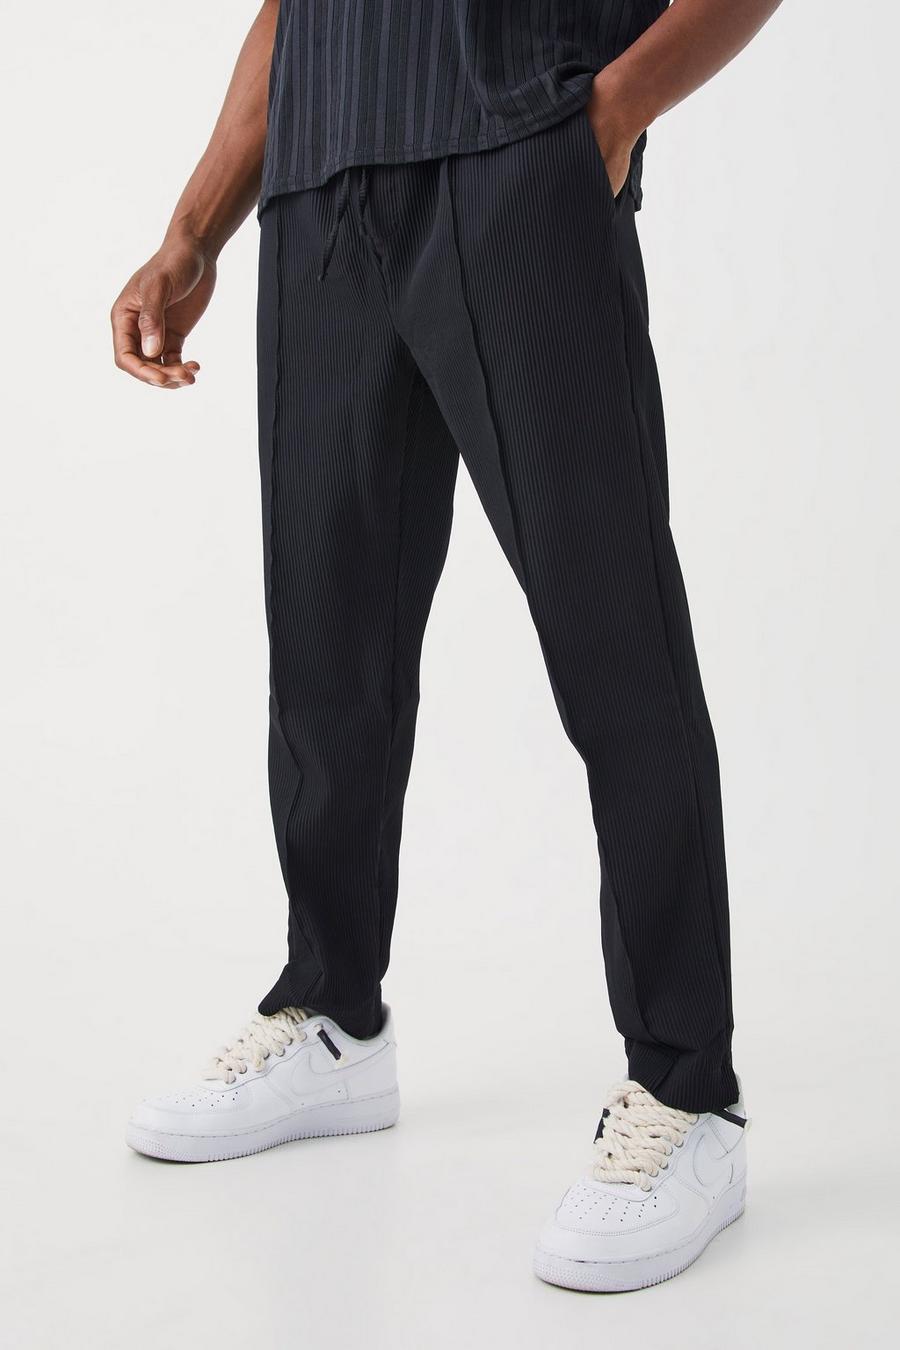 Pantaloni a pieghe Slim Fit con vita elasticizzata, Black